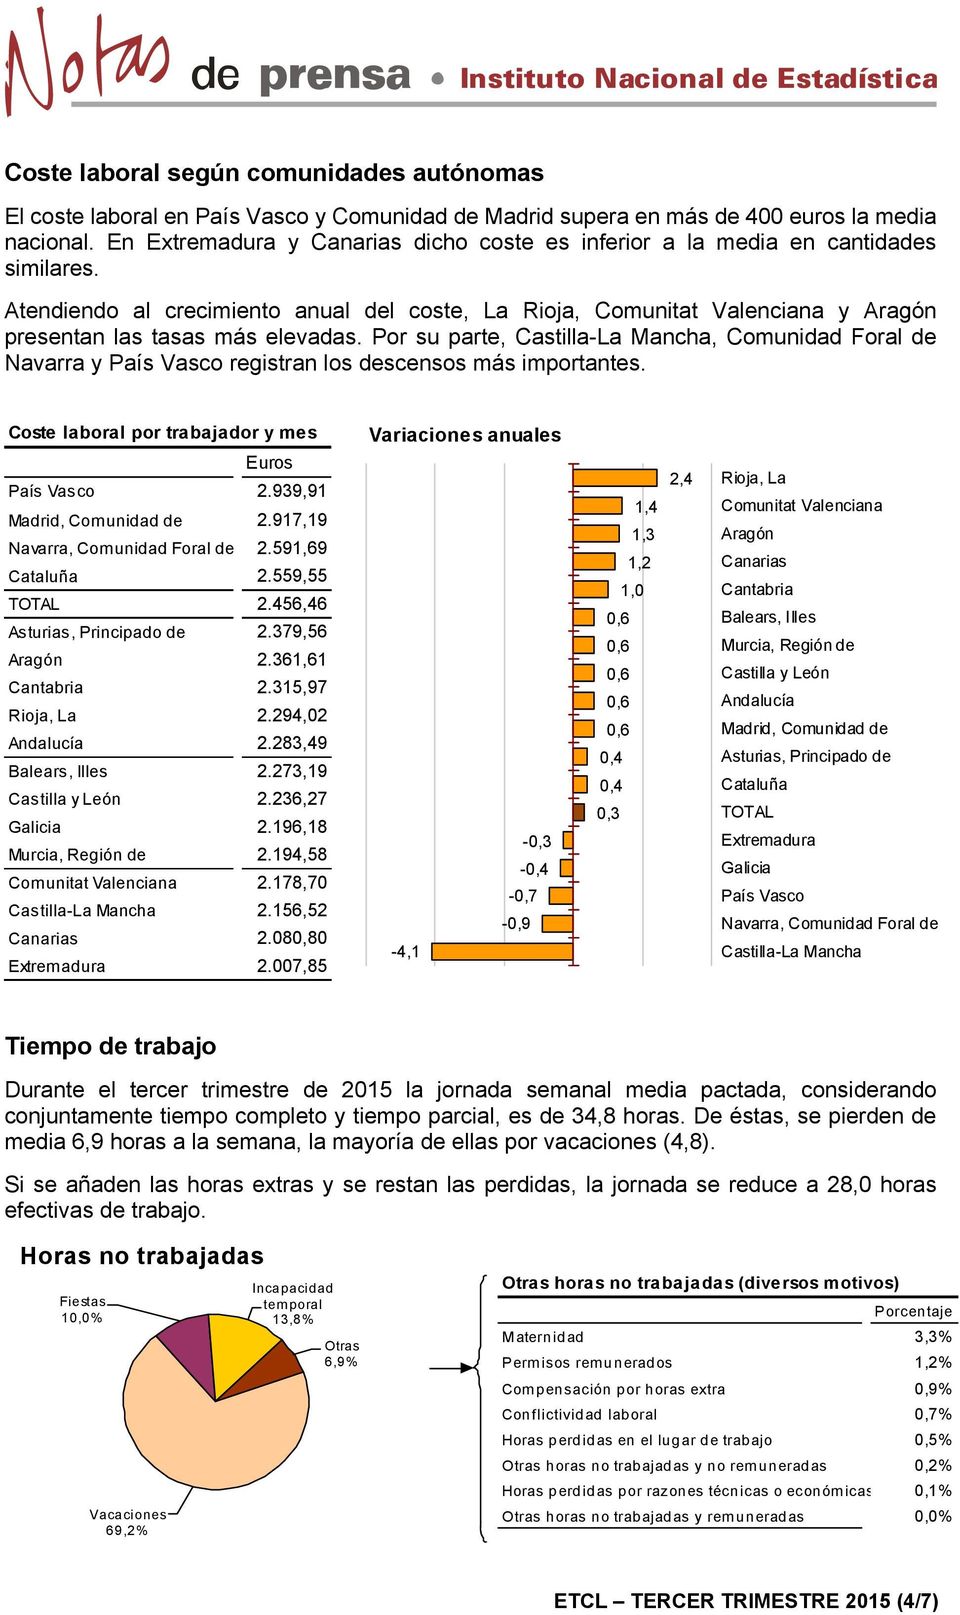 Atendiendo al crecimiento anual del coste, La Rioja, Comunitat Valenciana y Aragón presentan las tasas más elevadas.